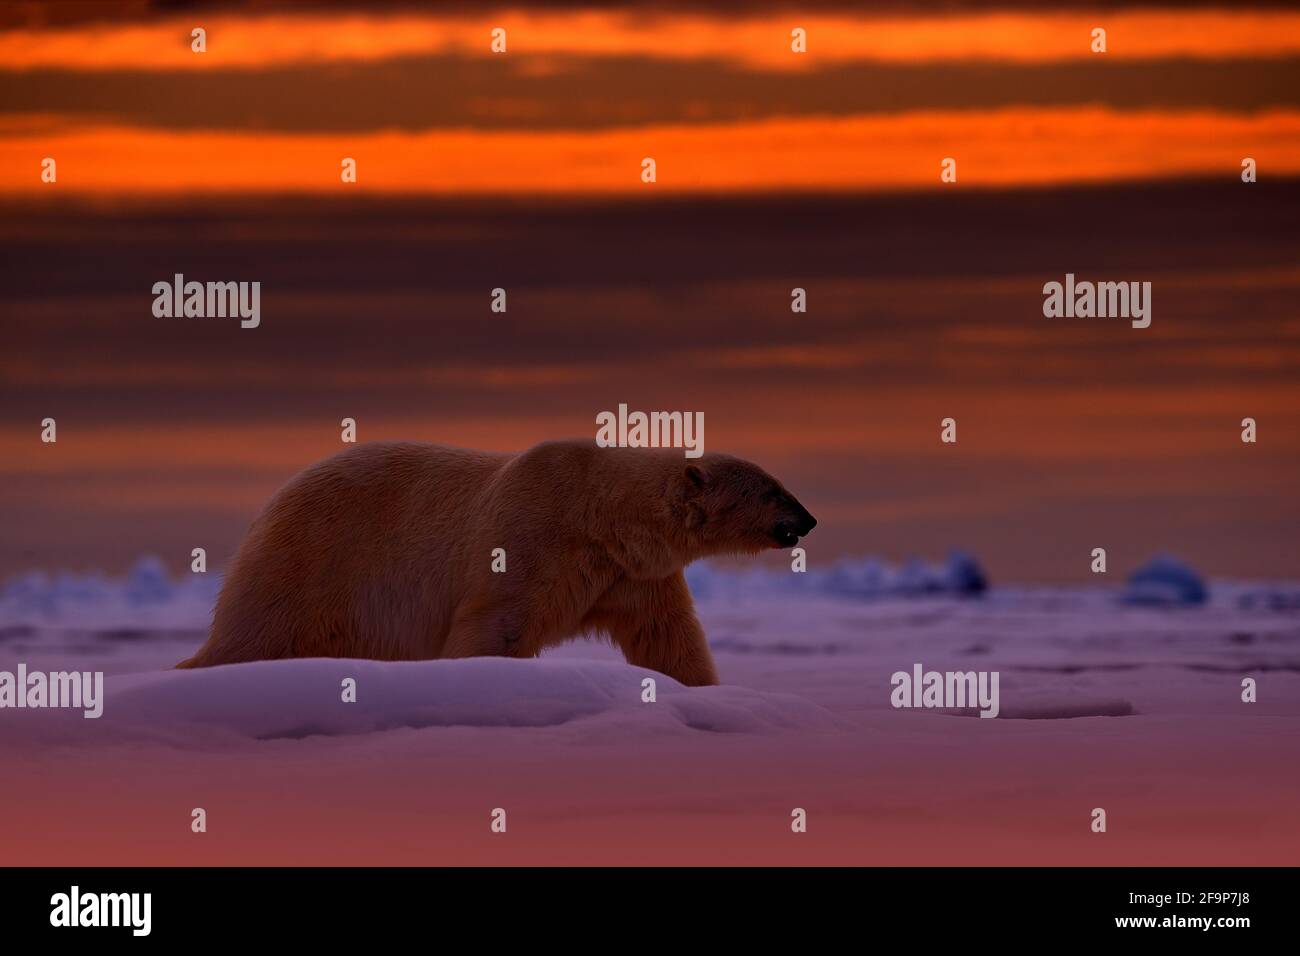 Eisbären Sonnenuntergang in der Arktis. Bär auf dem treibenden Eis mit Schnee, mit orangefarbener Abendsonne, Svalbard, Norwegen. Schöner roter Himmel mit Gefahr Tier, Stockfoto